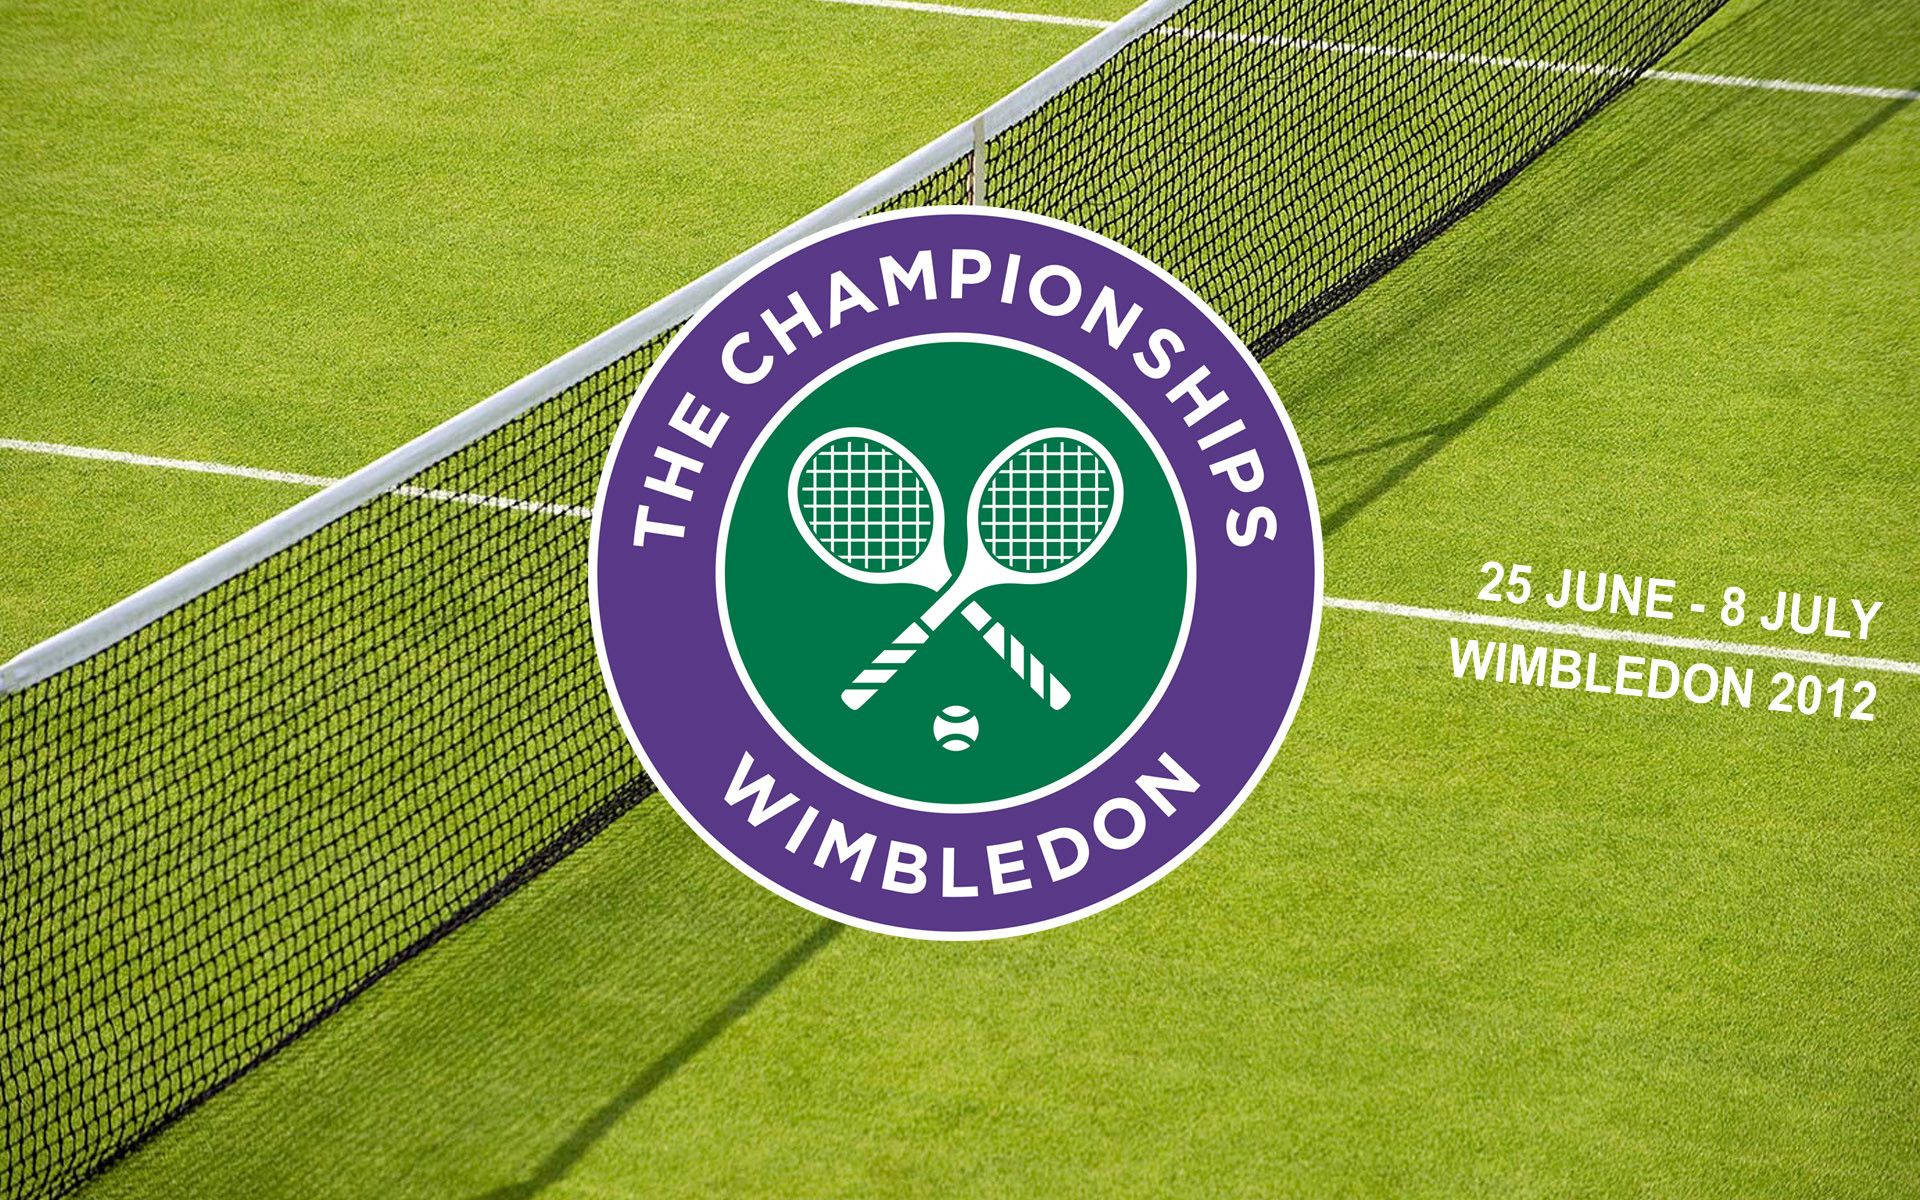 Wimbledon Logo In Grass